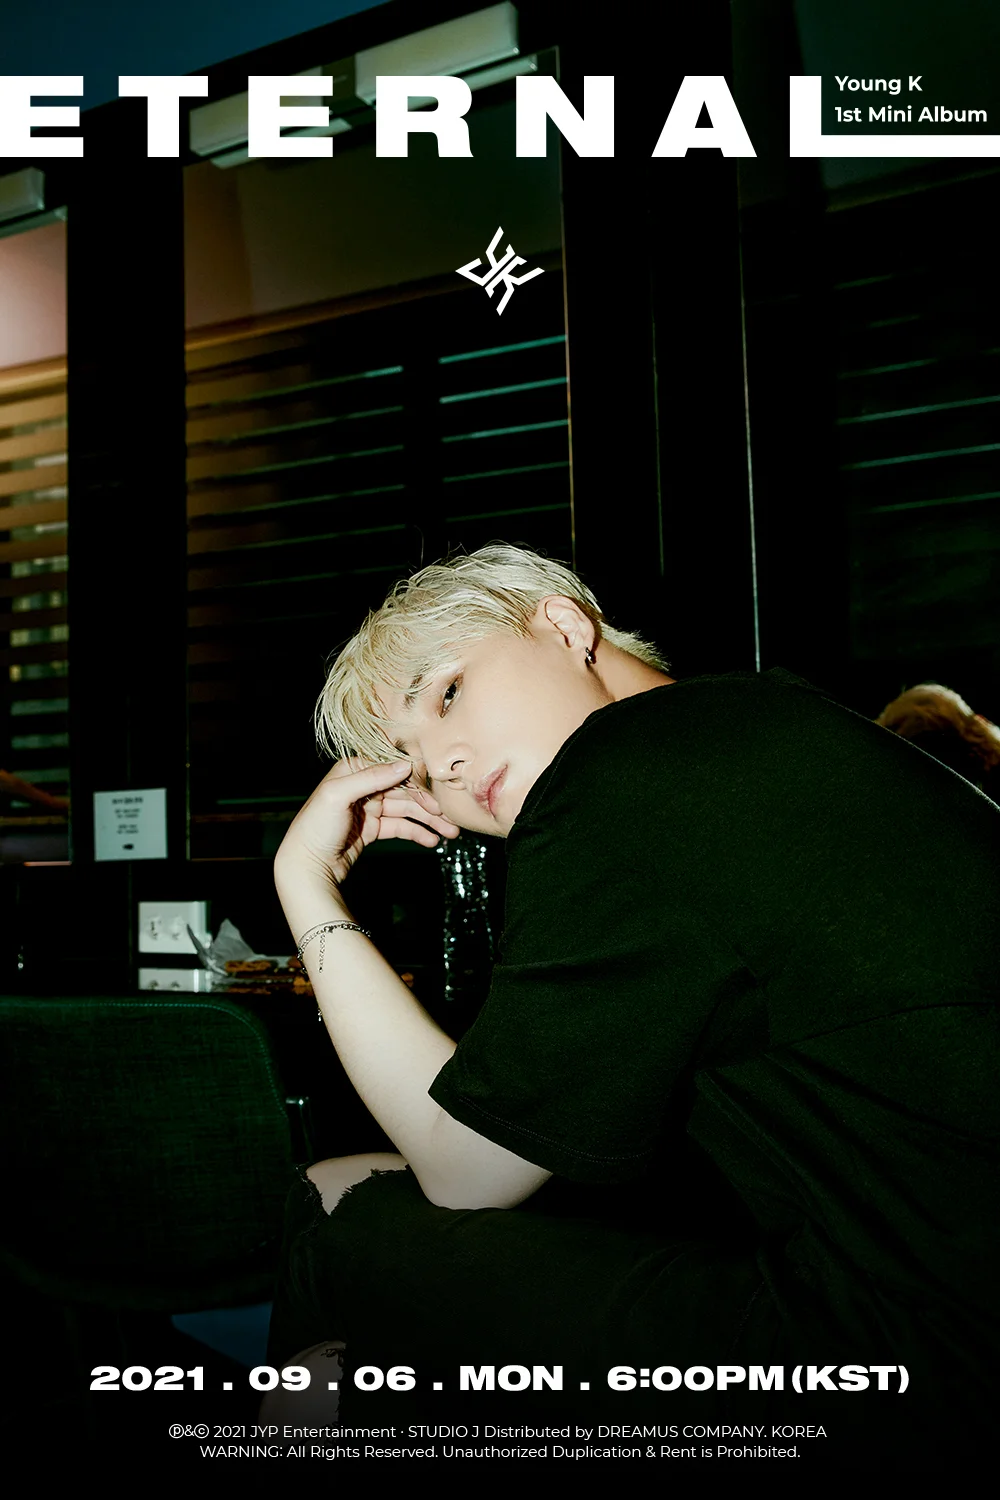 [Соло-дебют] Young K мини-альбом "Eternal": музыкальный клип "Goodnight, Dear" feat. Jukjae (лайв-версия)